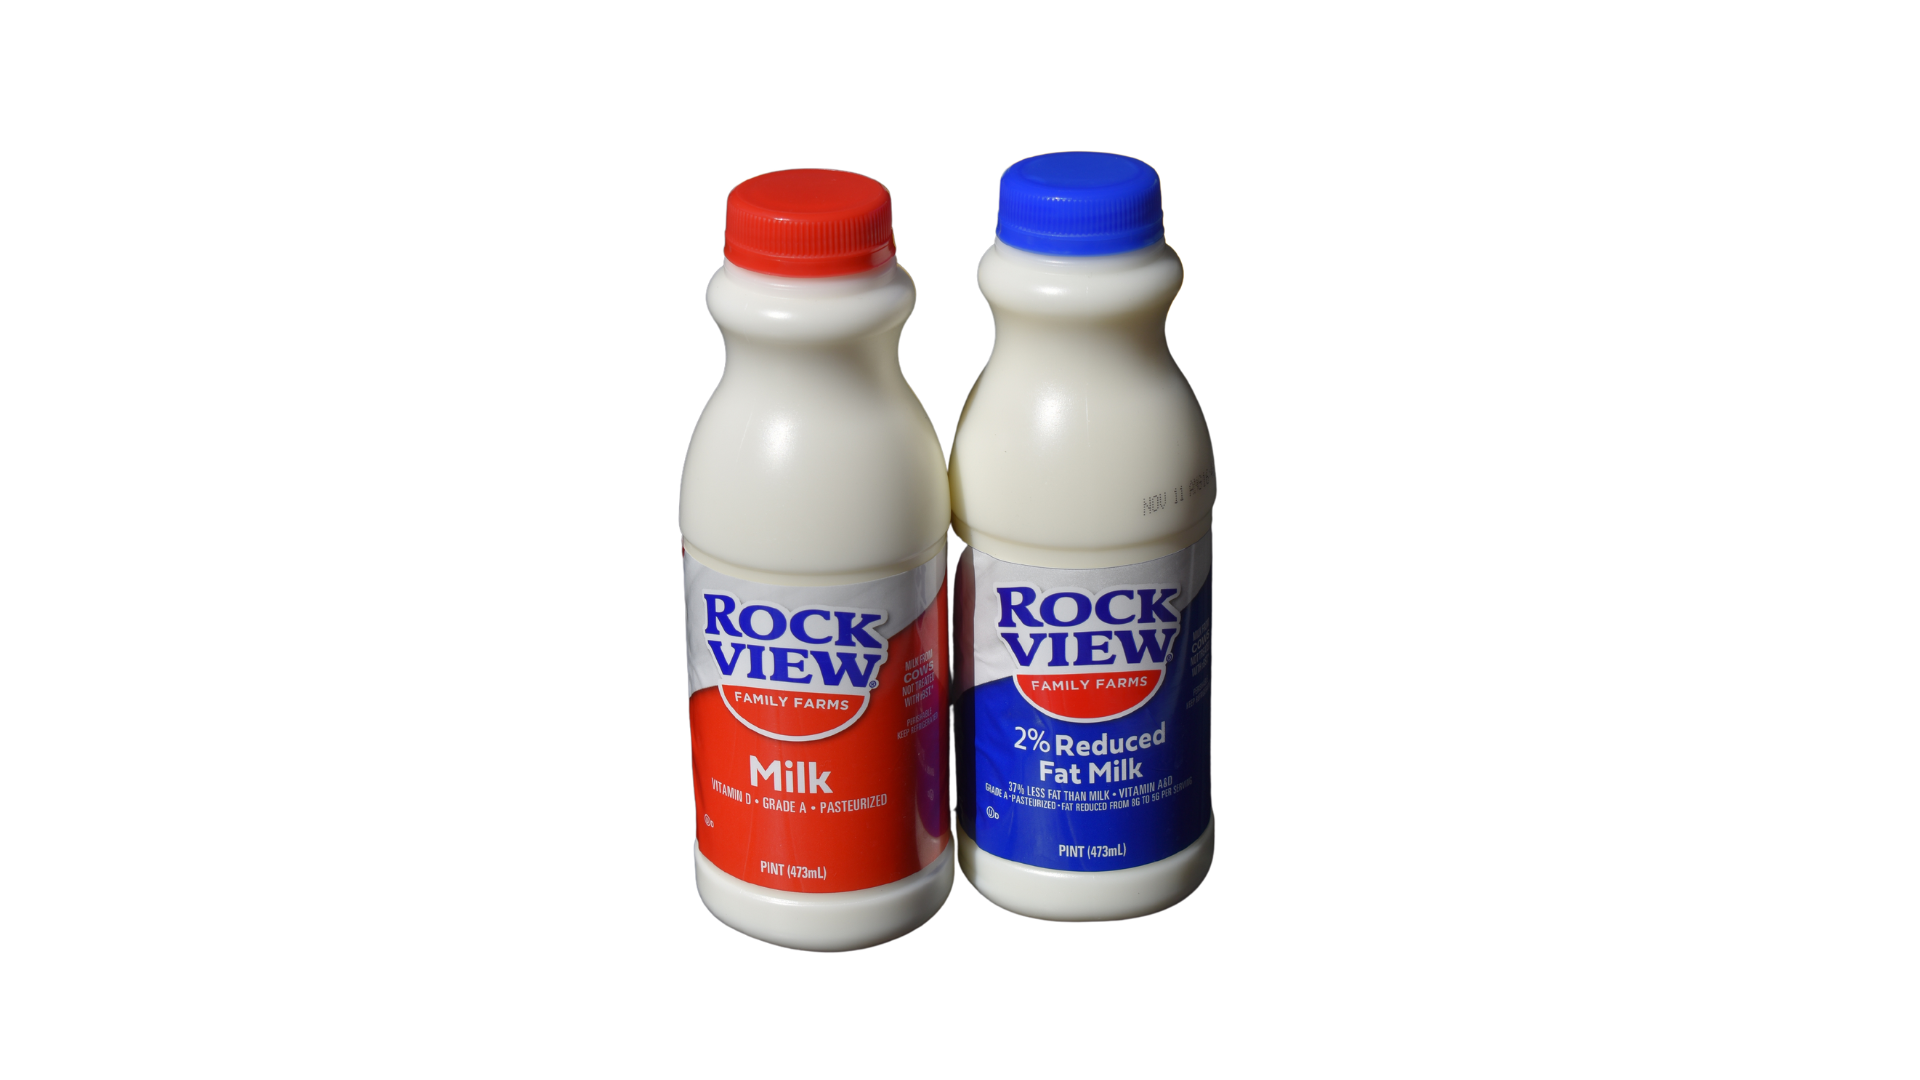 Rockview Milk